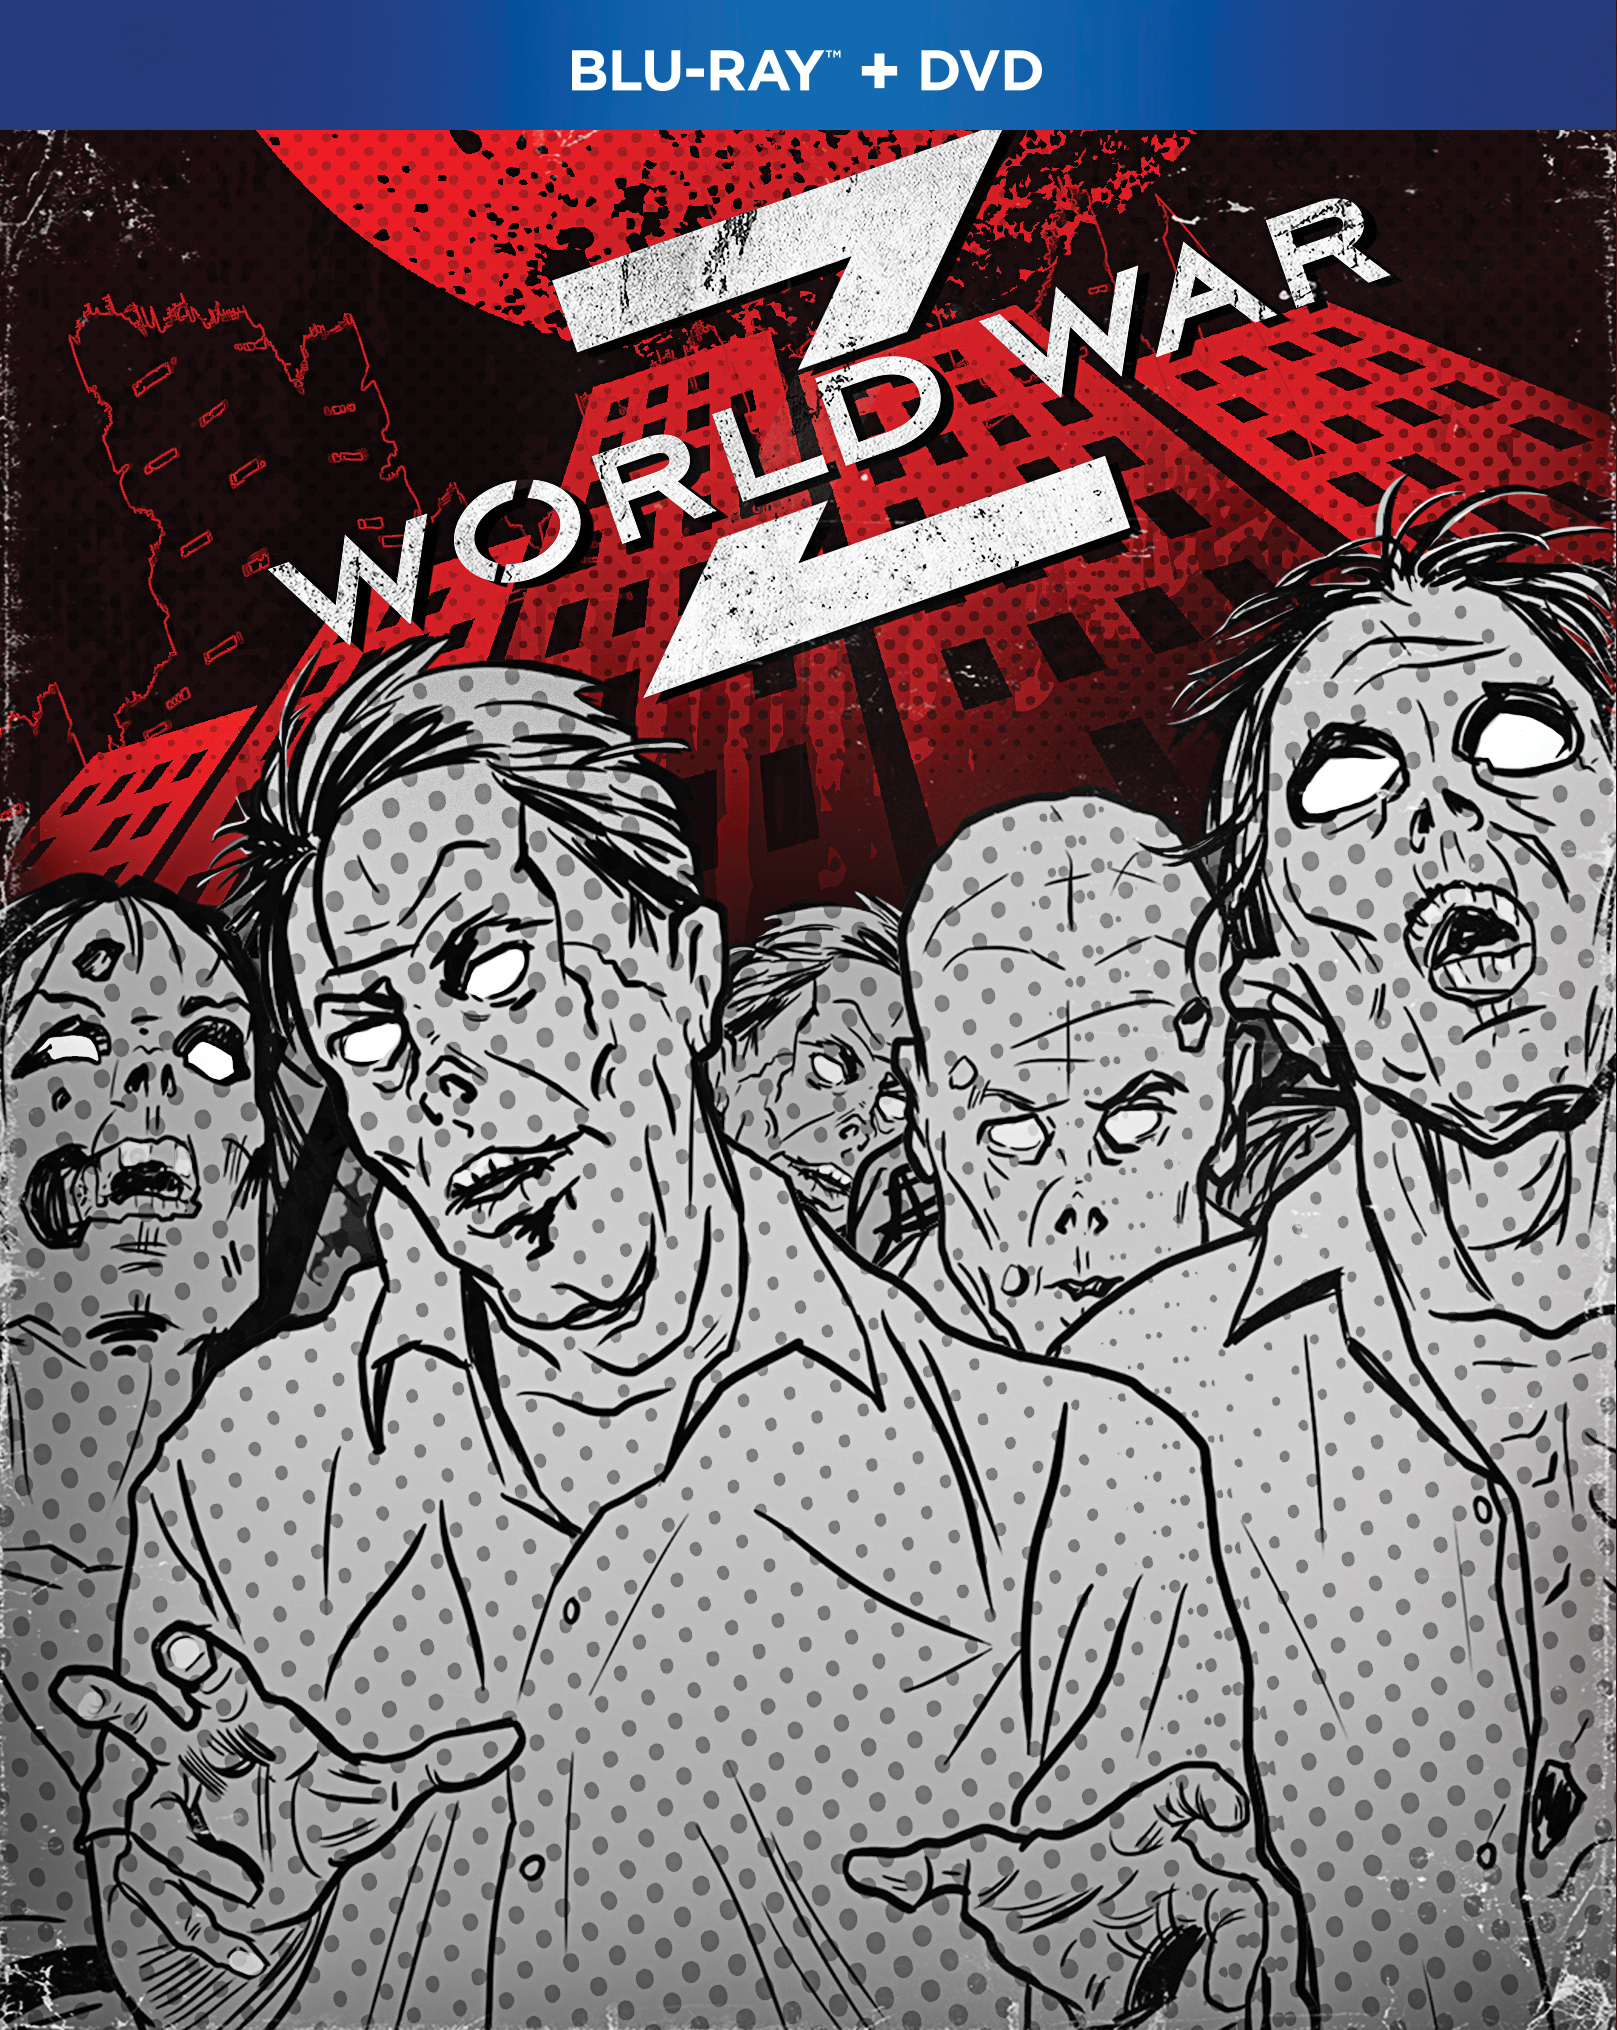 World War Z [4K Ultra HD Blu-ray/Blu-ray] [2013] - Best Buy